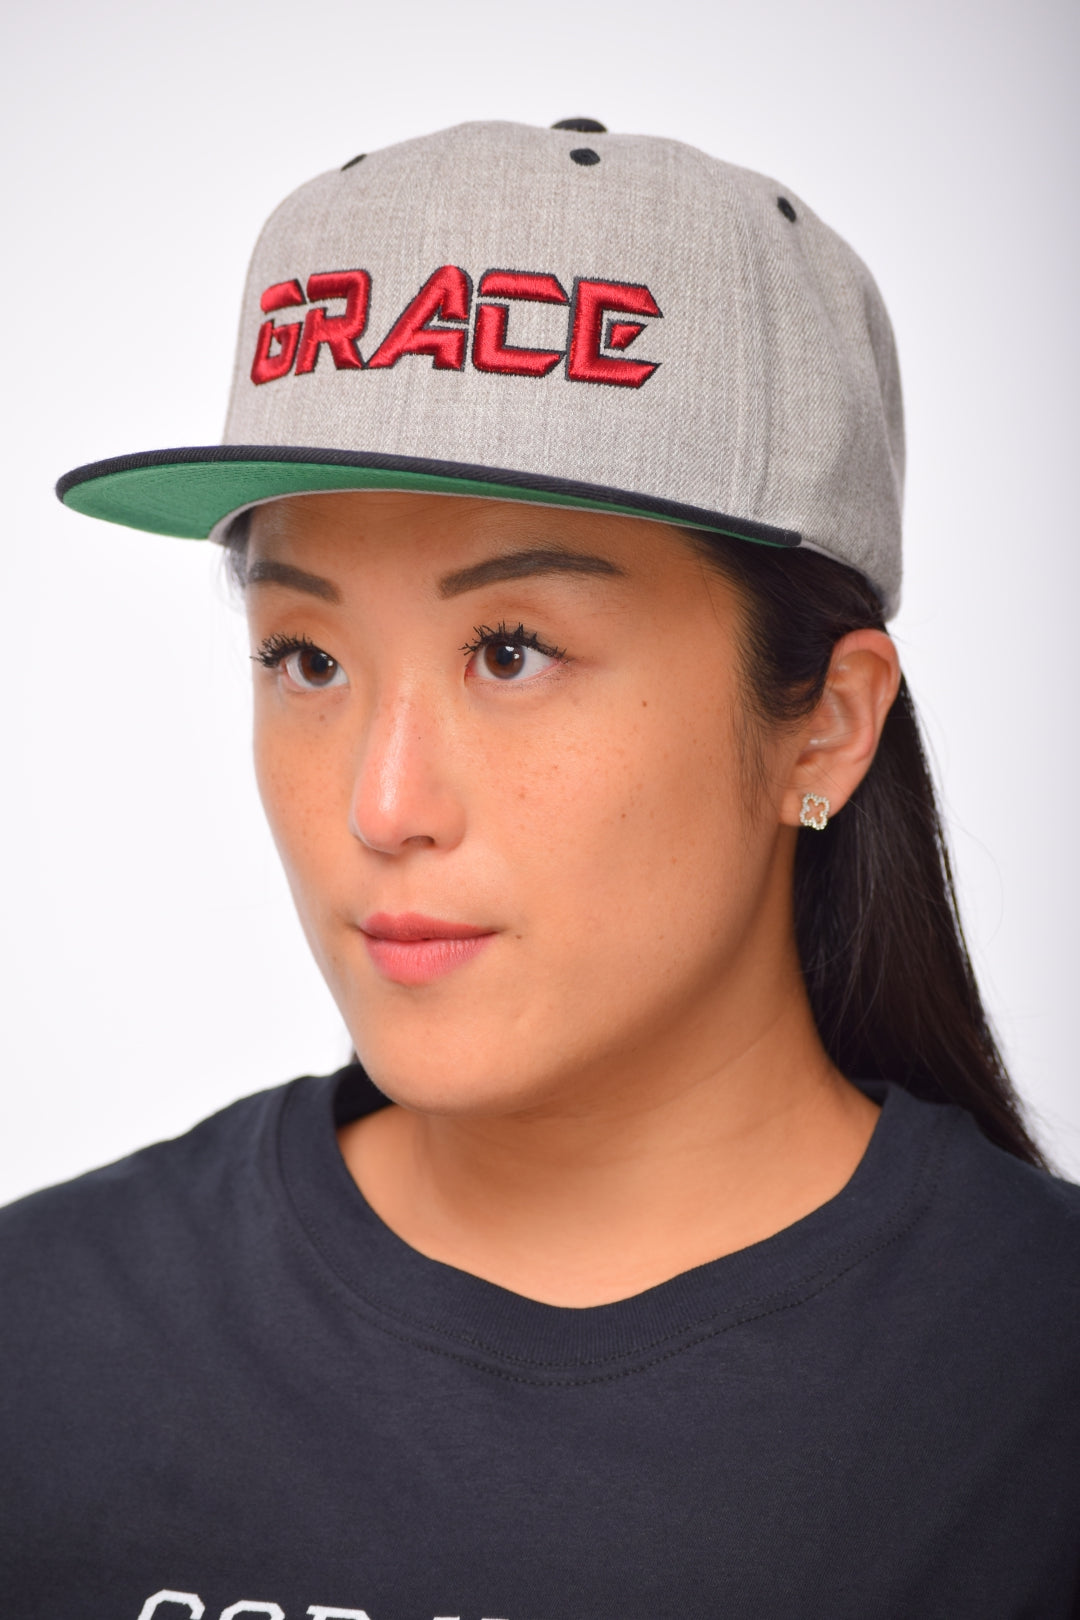 Grace Christian Snapback Hat